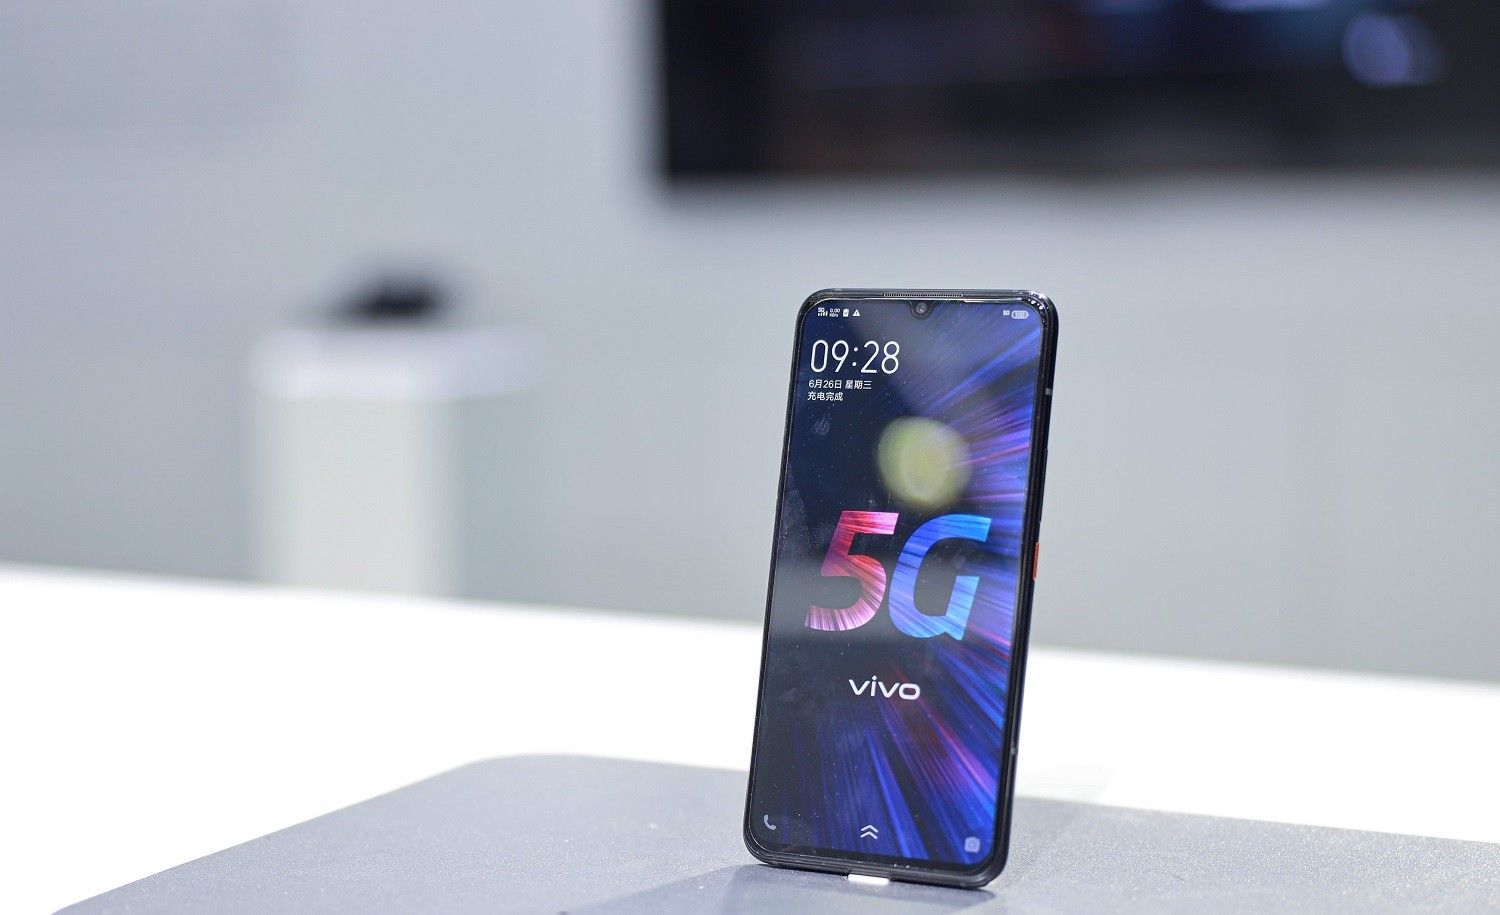 Smartphone 5G pra-komersial Vivo dipamerkan di MWC 2019.